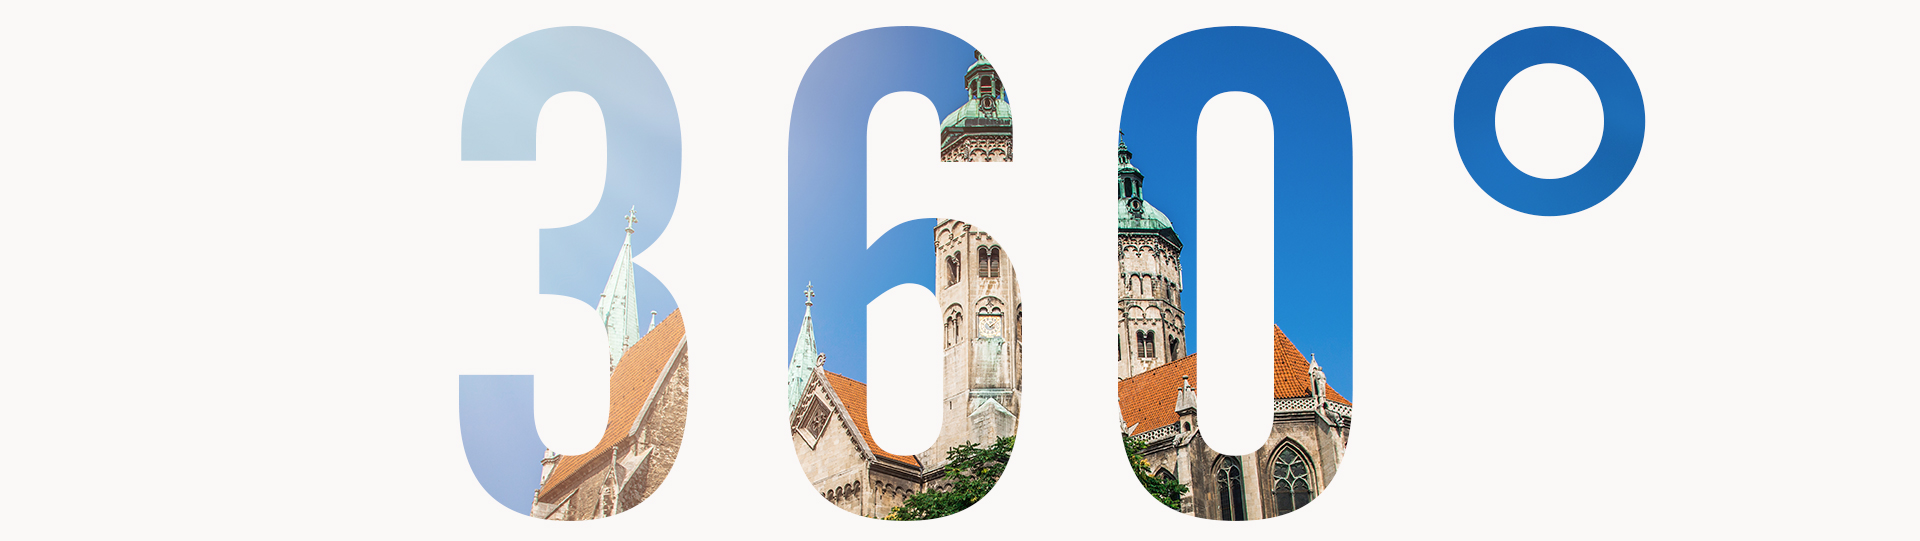 Panorama à 360° de la cathédrale de Naumburg